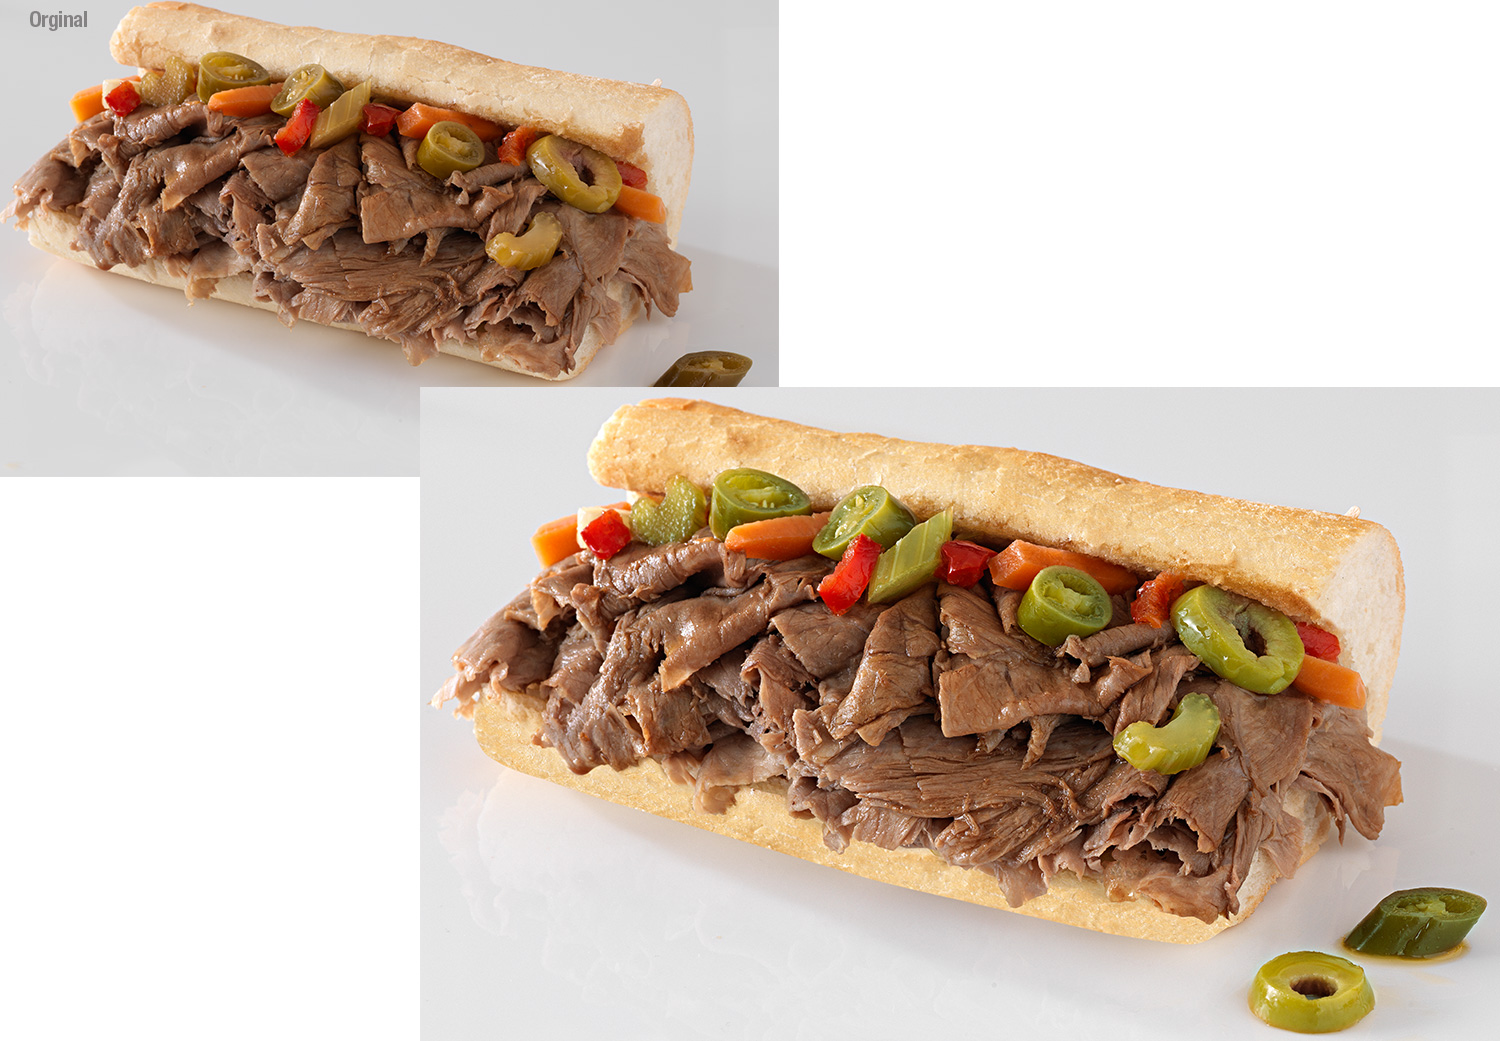 Retouching-Food-beef-sandwich.jpg